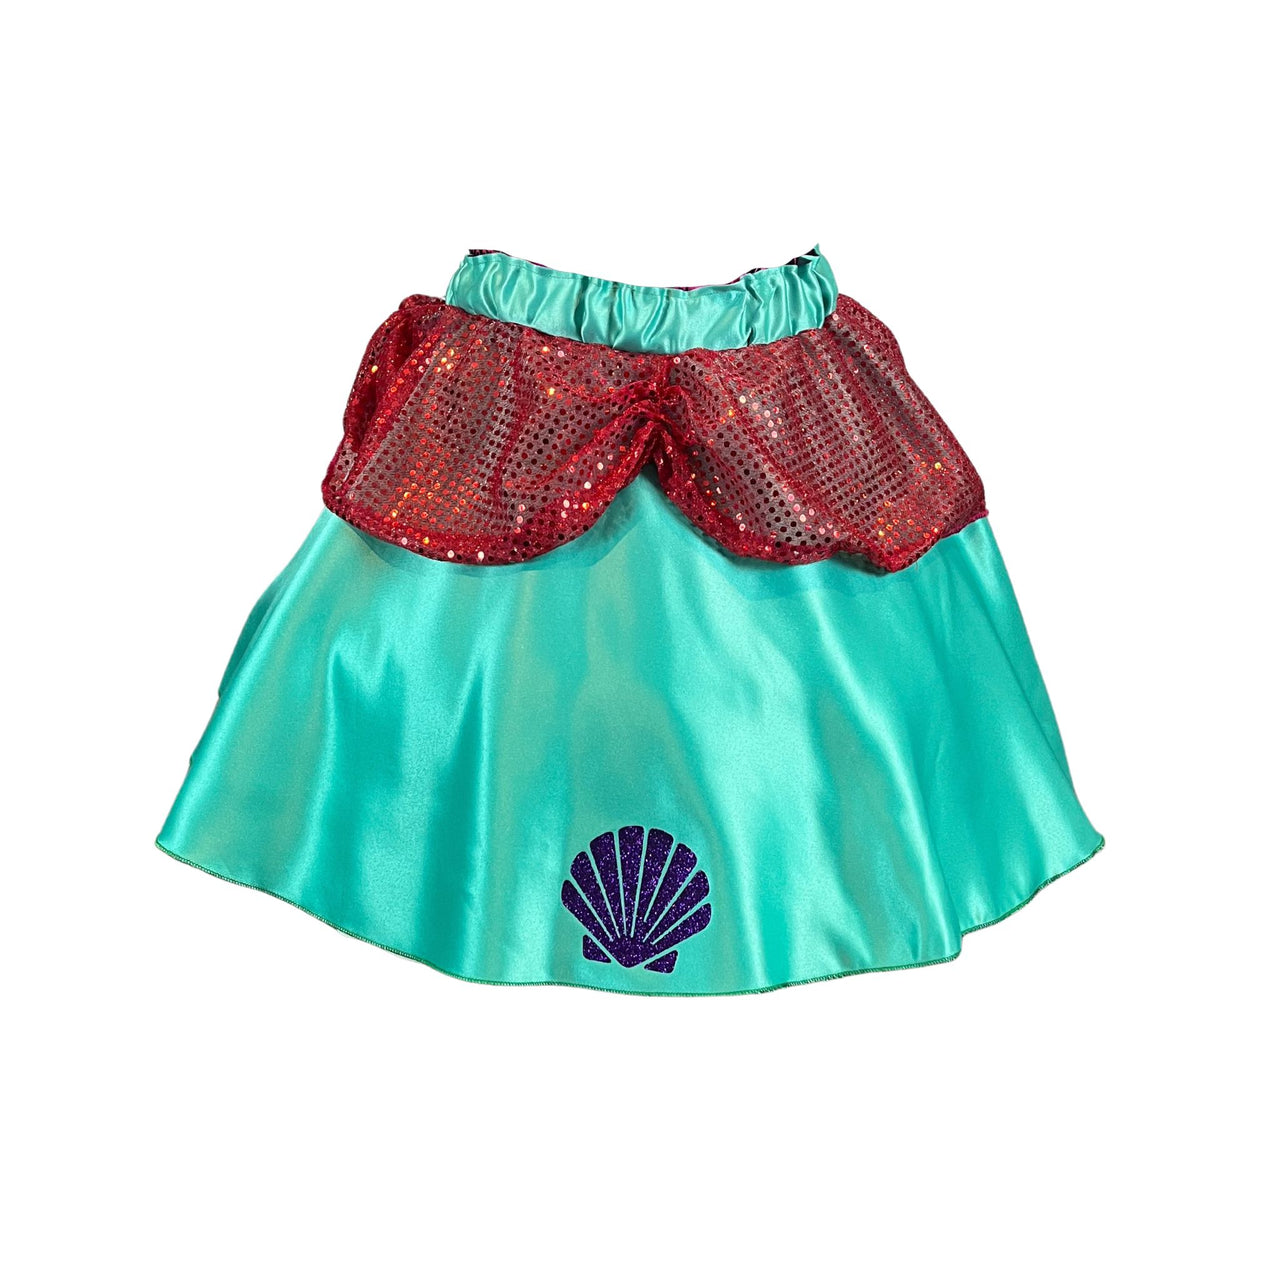 Mermaid Royalty Skirt